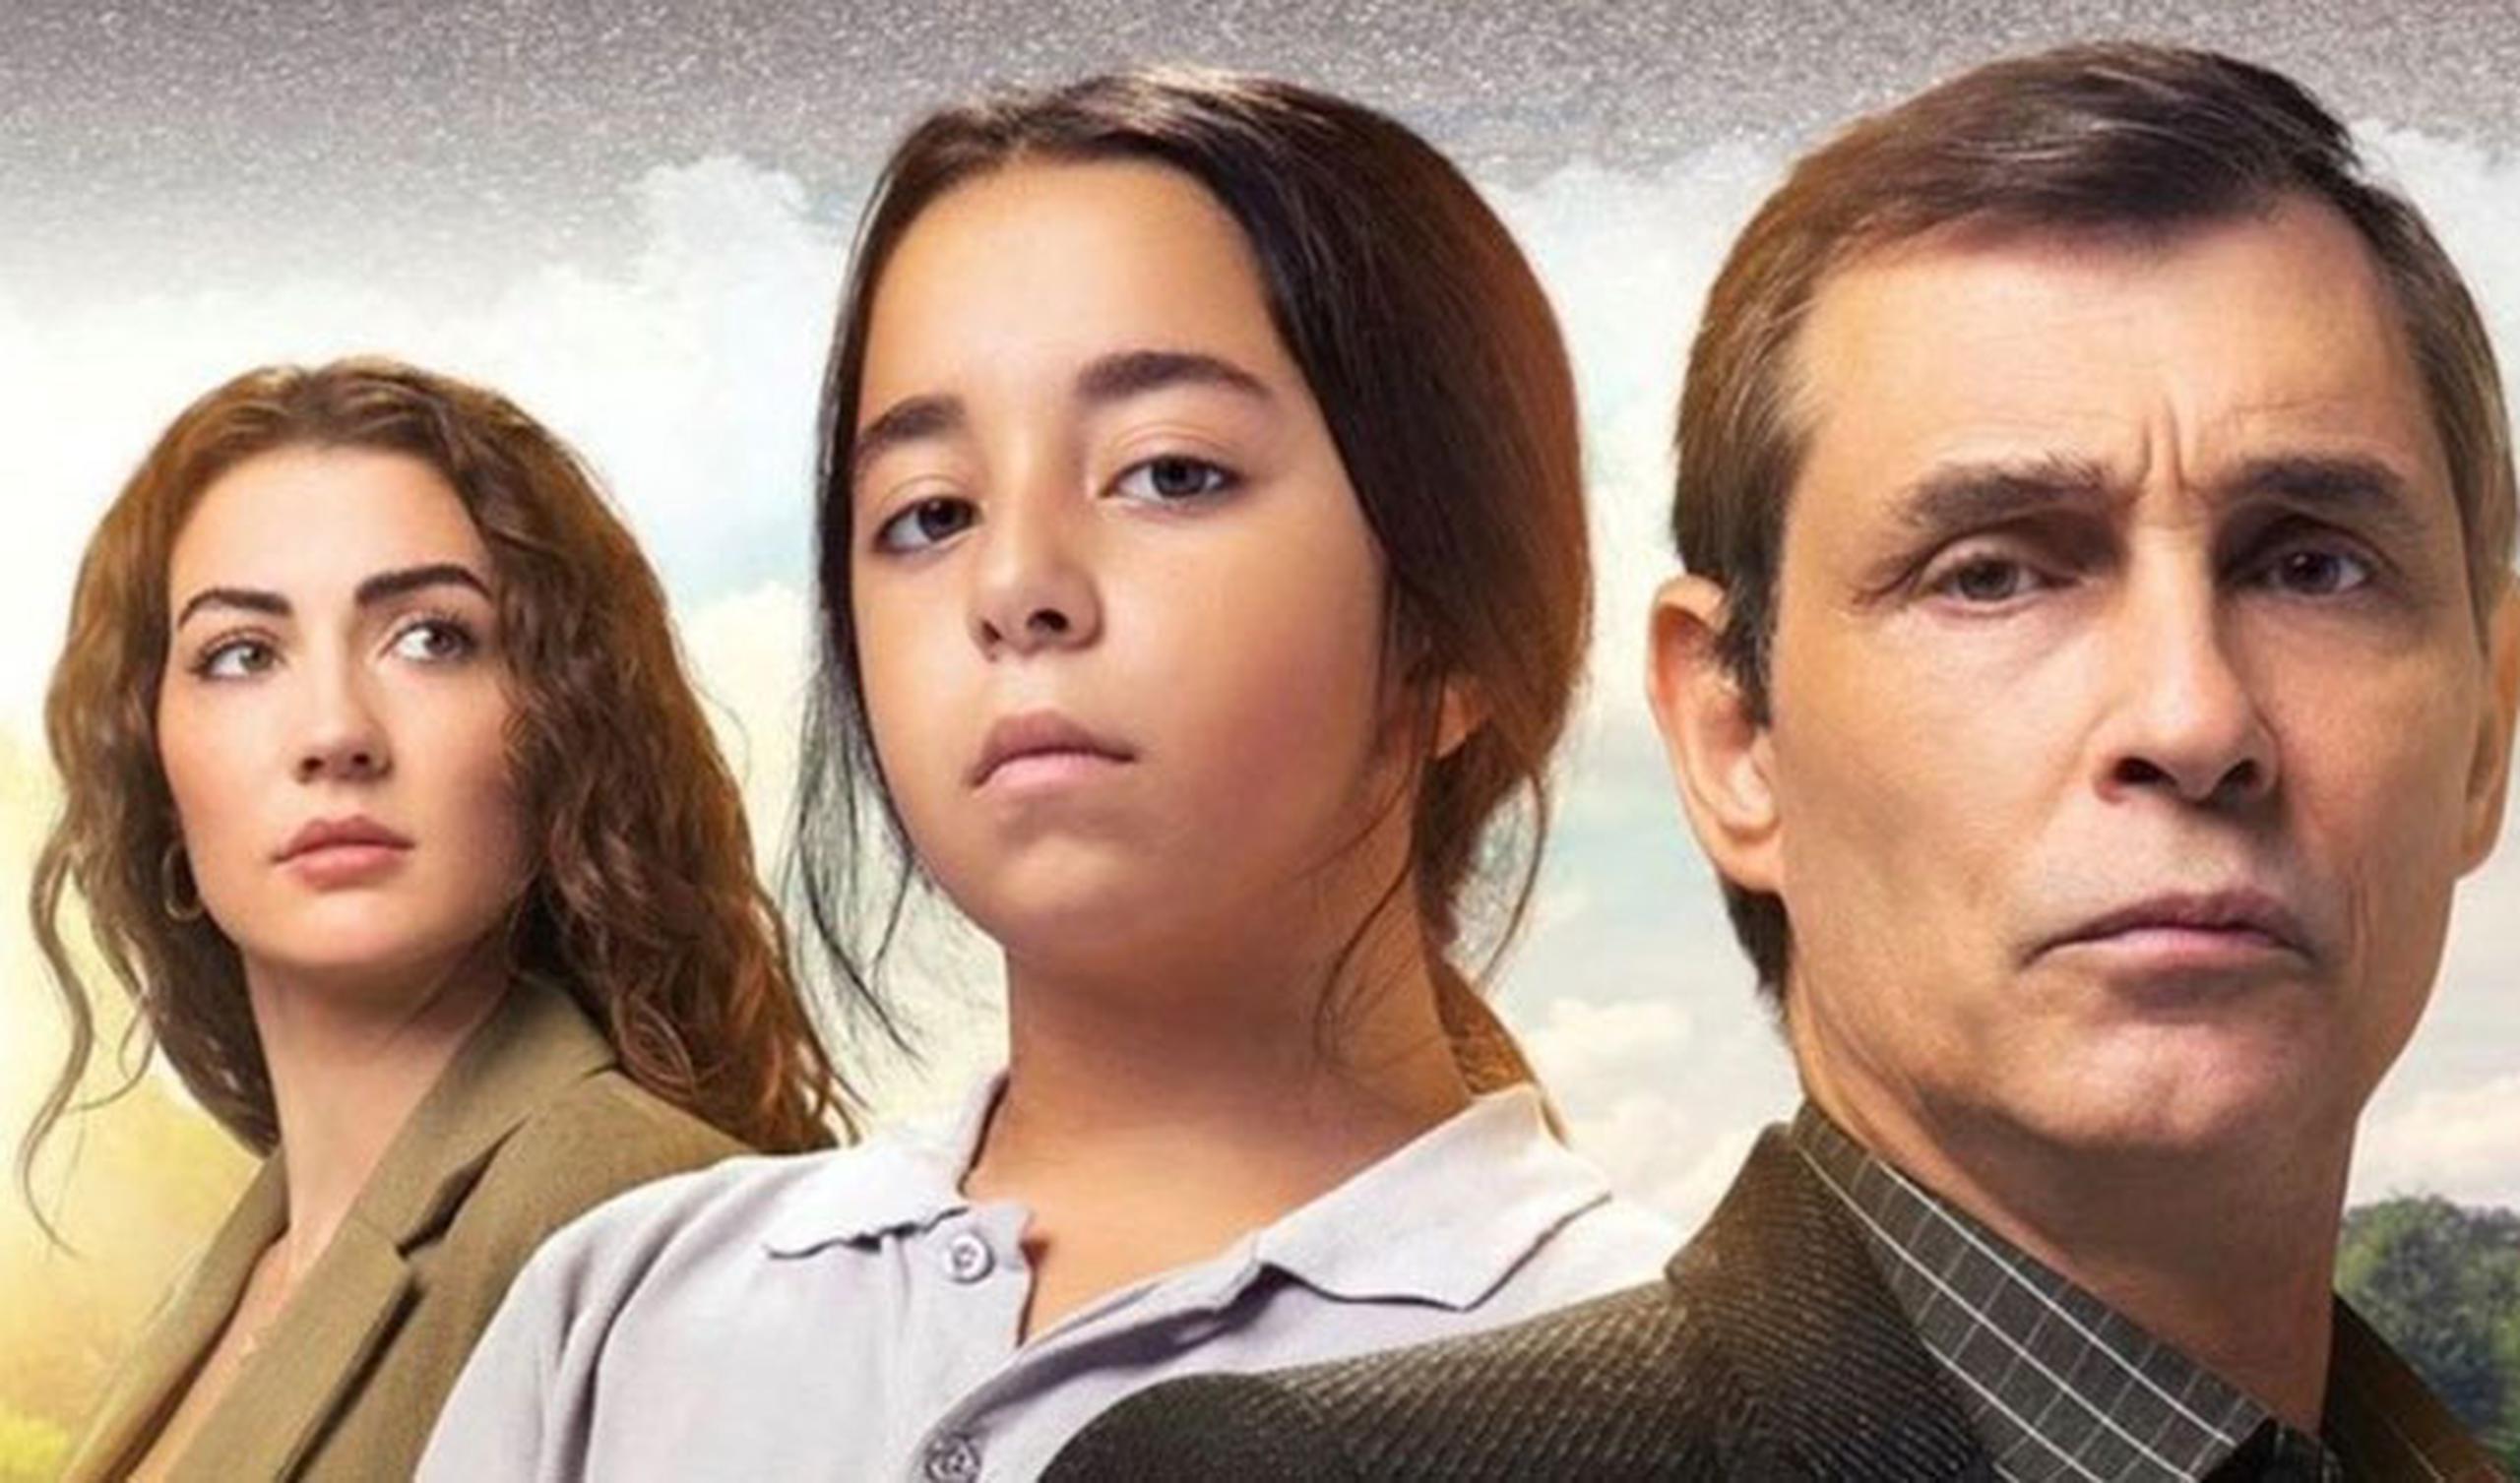 Yetim, la nueva telenovela turca de Telemundo protagonizada por la actriz infantil Beren Gökyıldız.